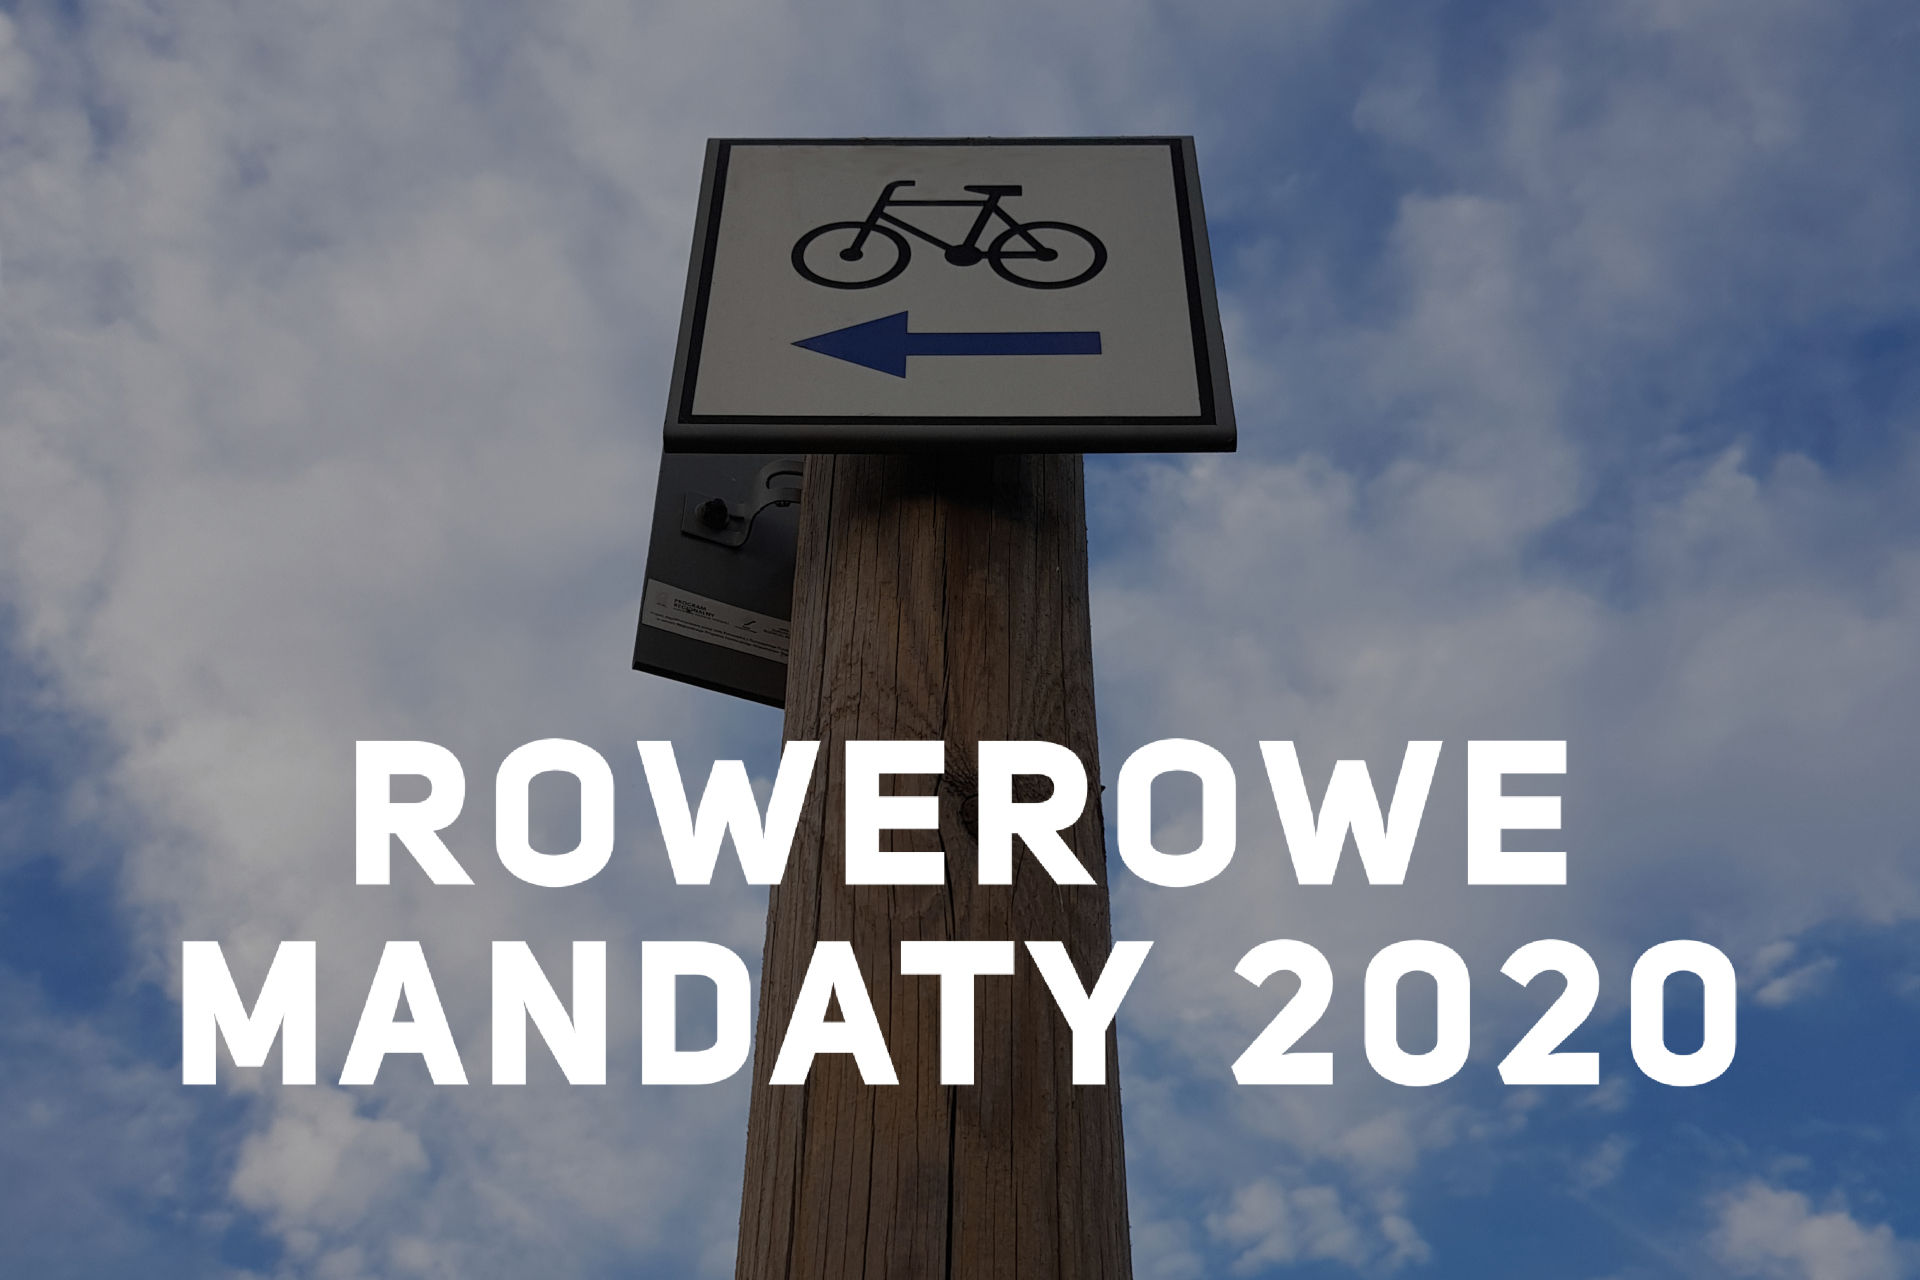 mandaty dla rowerzystów, rowerowe mandaty, mandaty 2020, rowerowe mandaty 2020, mandaty dla rowerzystów 2020